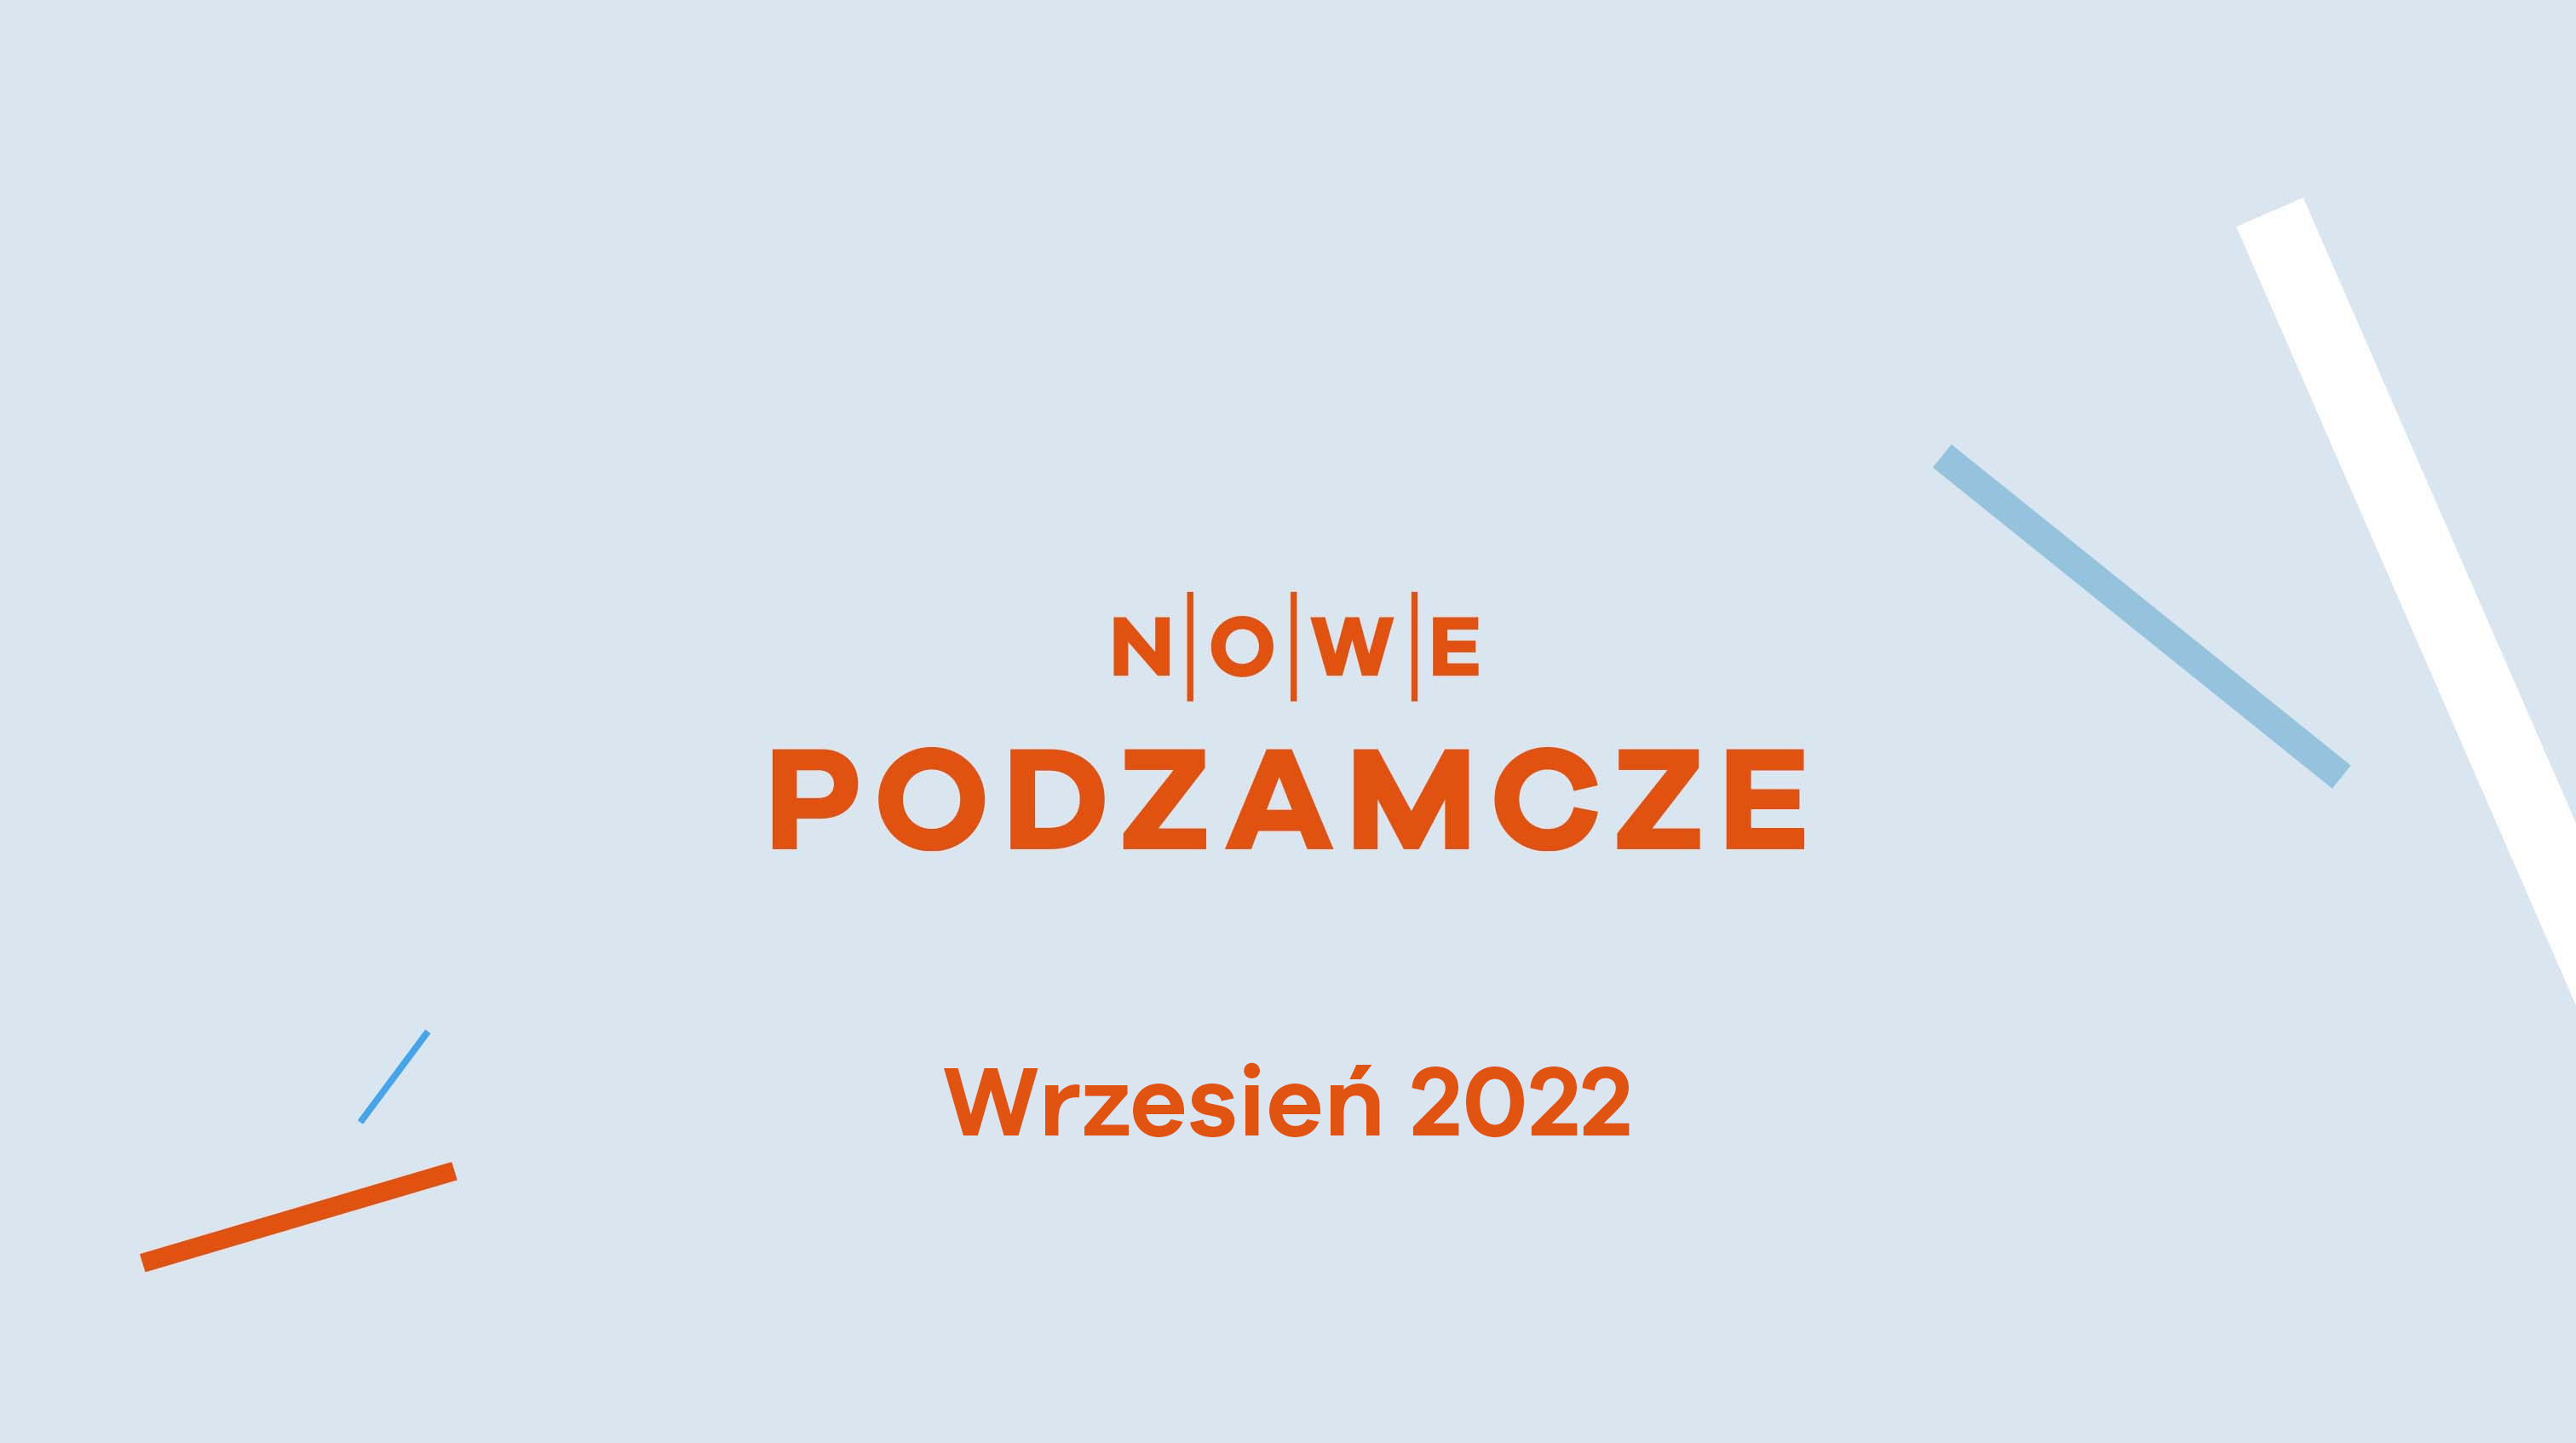 Nowe Podzamcze, Dziennik budowy - Nowe Podzamcze w Wałbrzychu z drona - marzec 2022